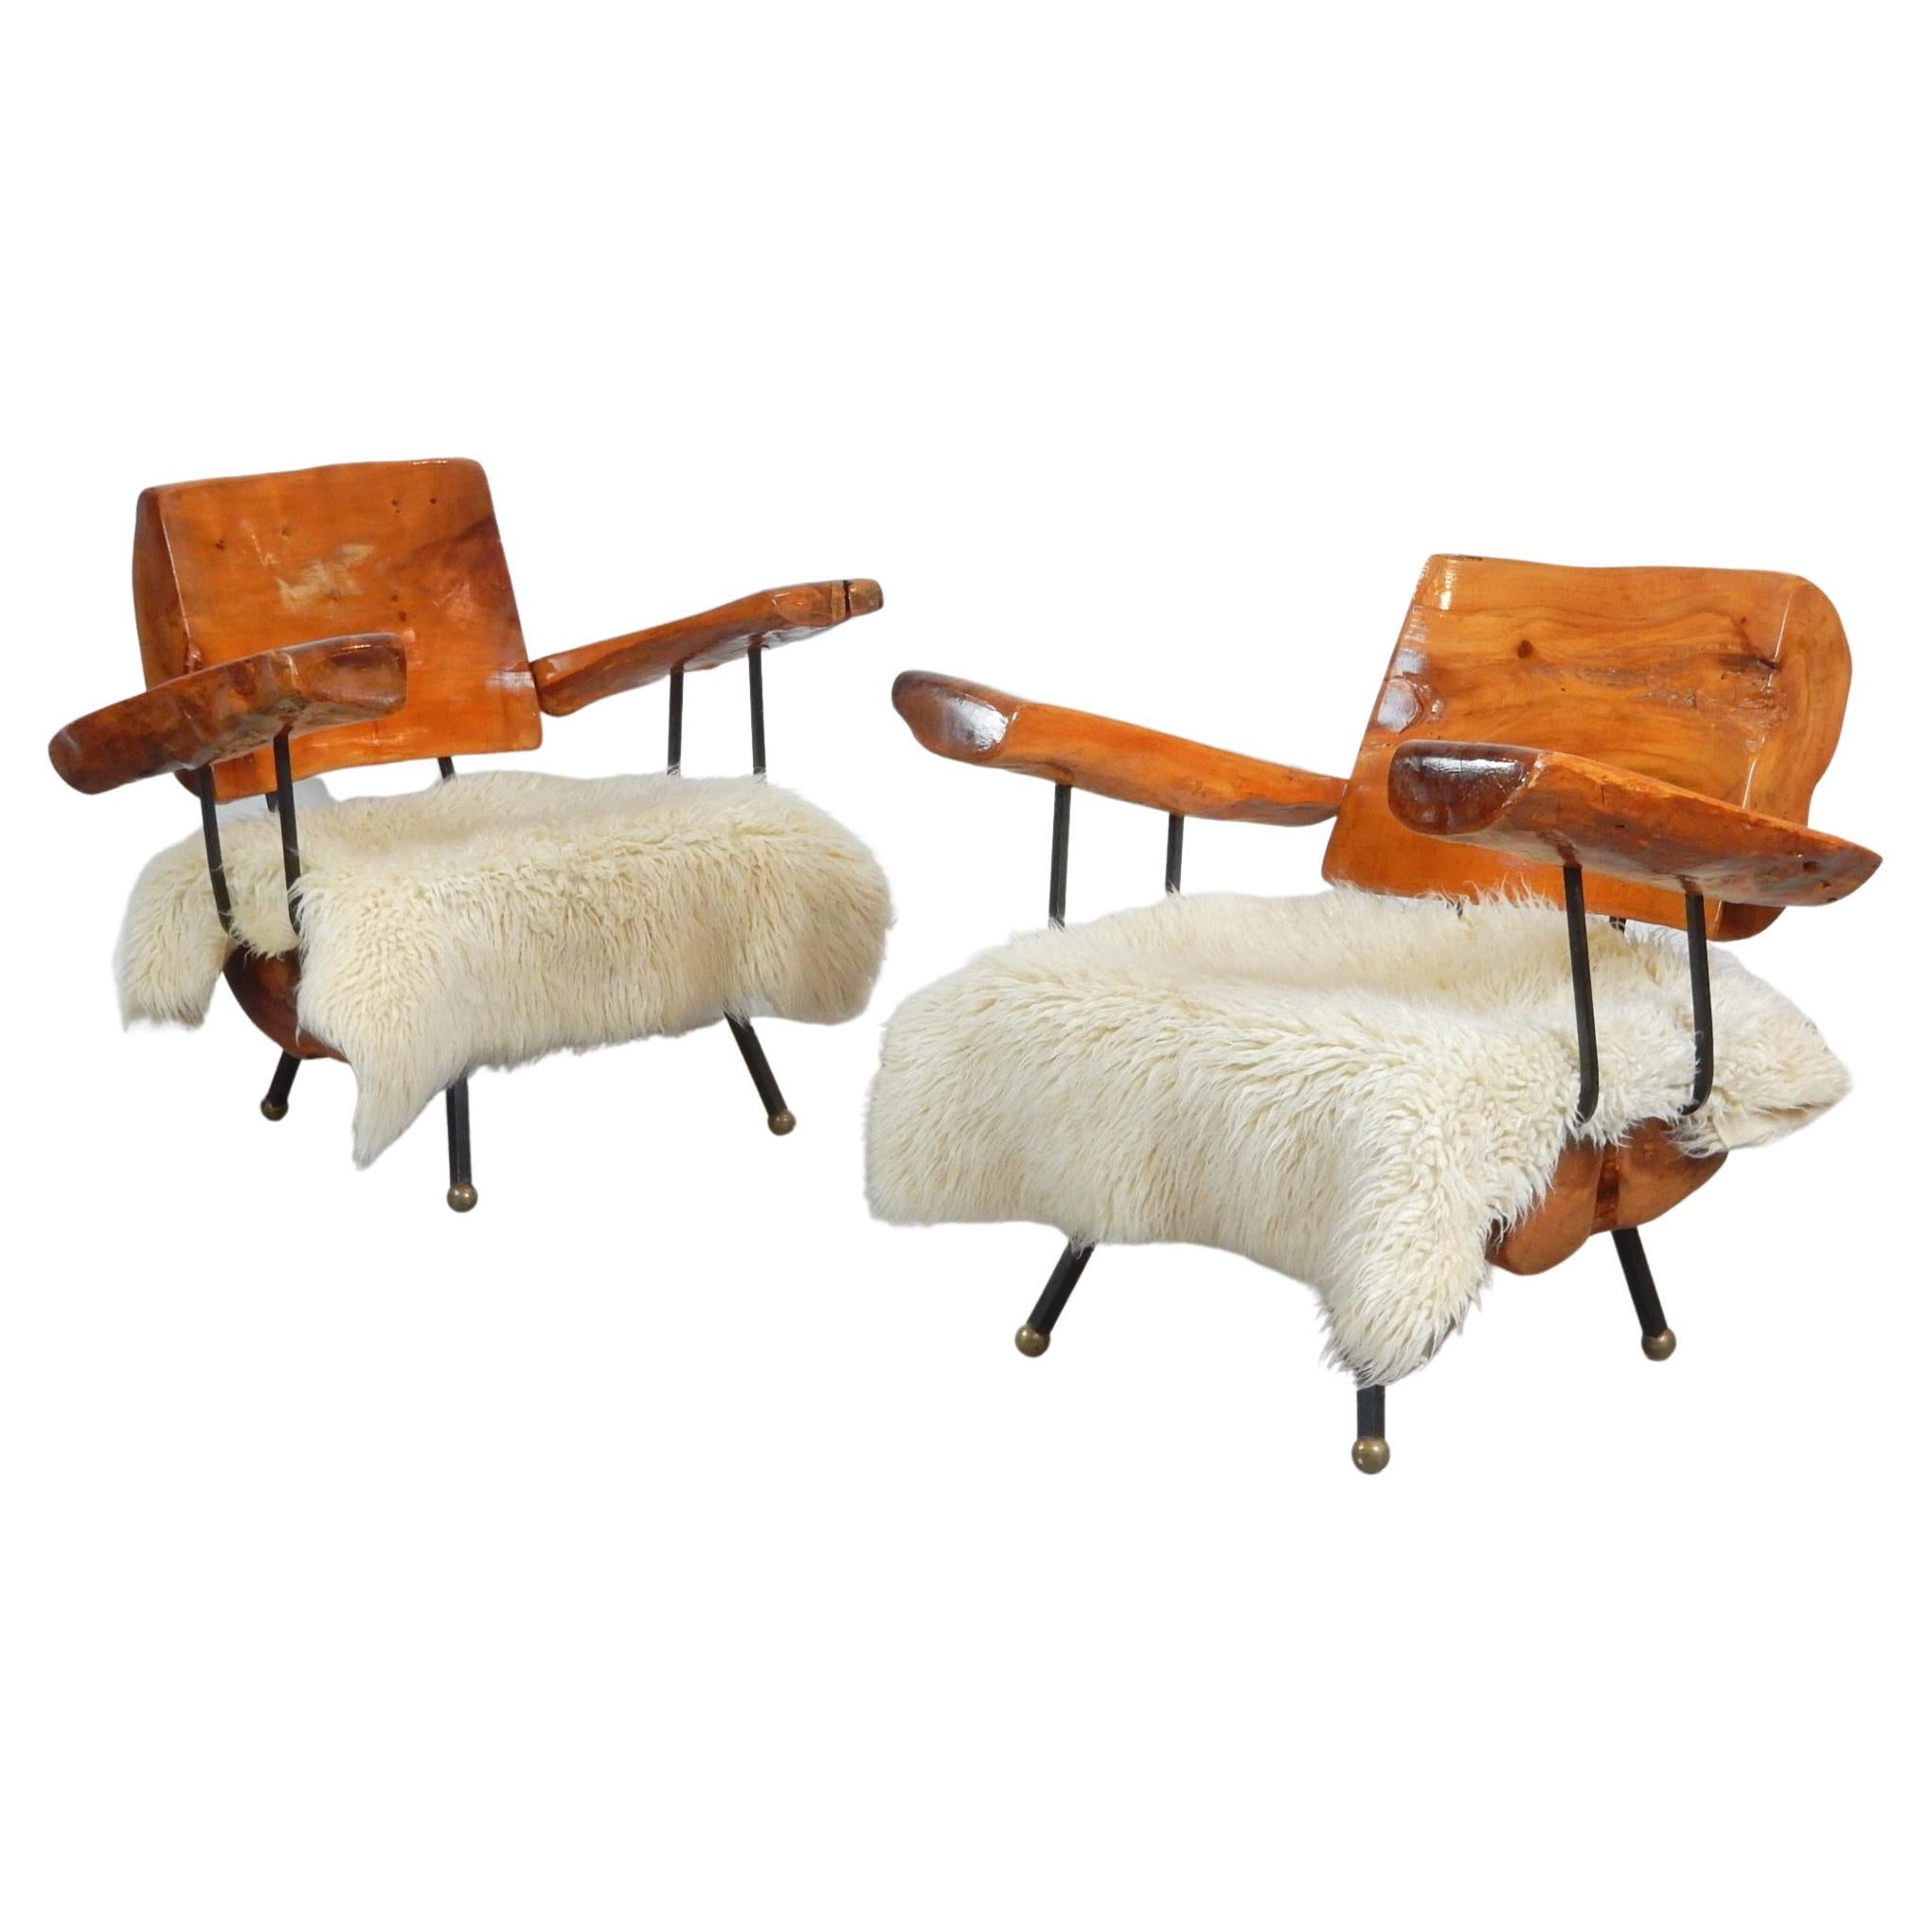 Ein erstaunliches Paar massiver Lounge-Sessel aus Sabino-Wurzelholz.
Die Beine sind handgeformt aus dickem Schmiedeeisen mit großen Bronzekugelfüßen.
Bequeme, entspannte Stühle, sehr schwer und solide.
Ein passender Couchtisch ist in einem separaten